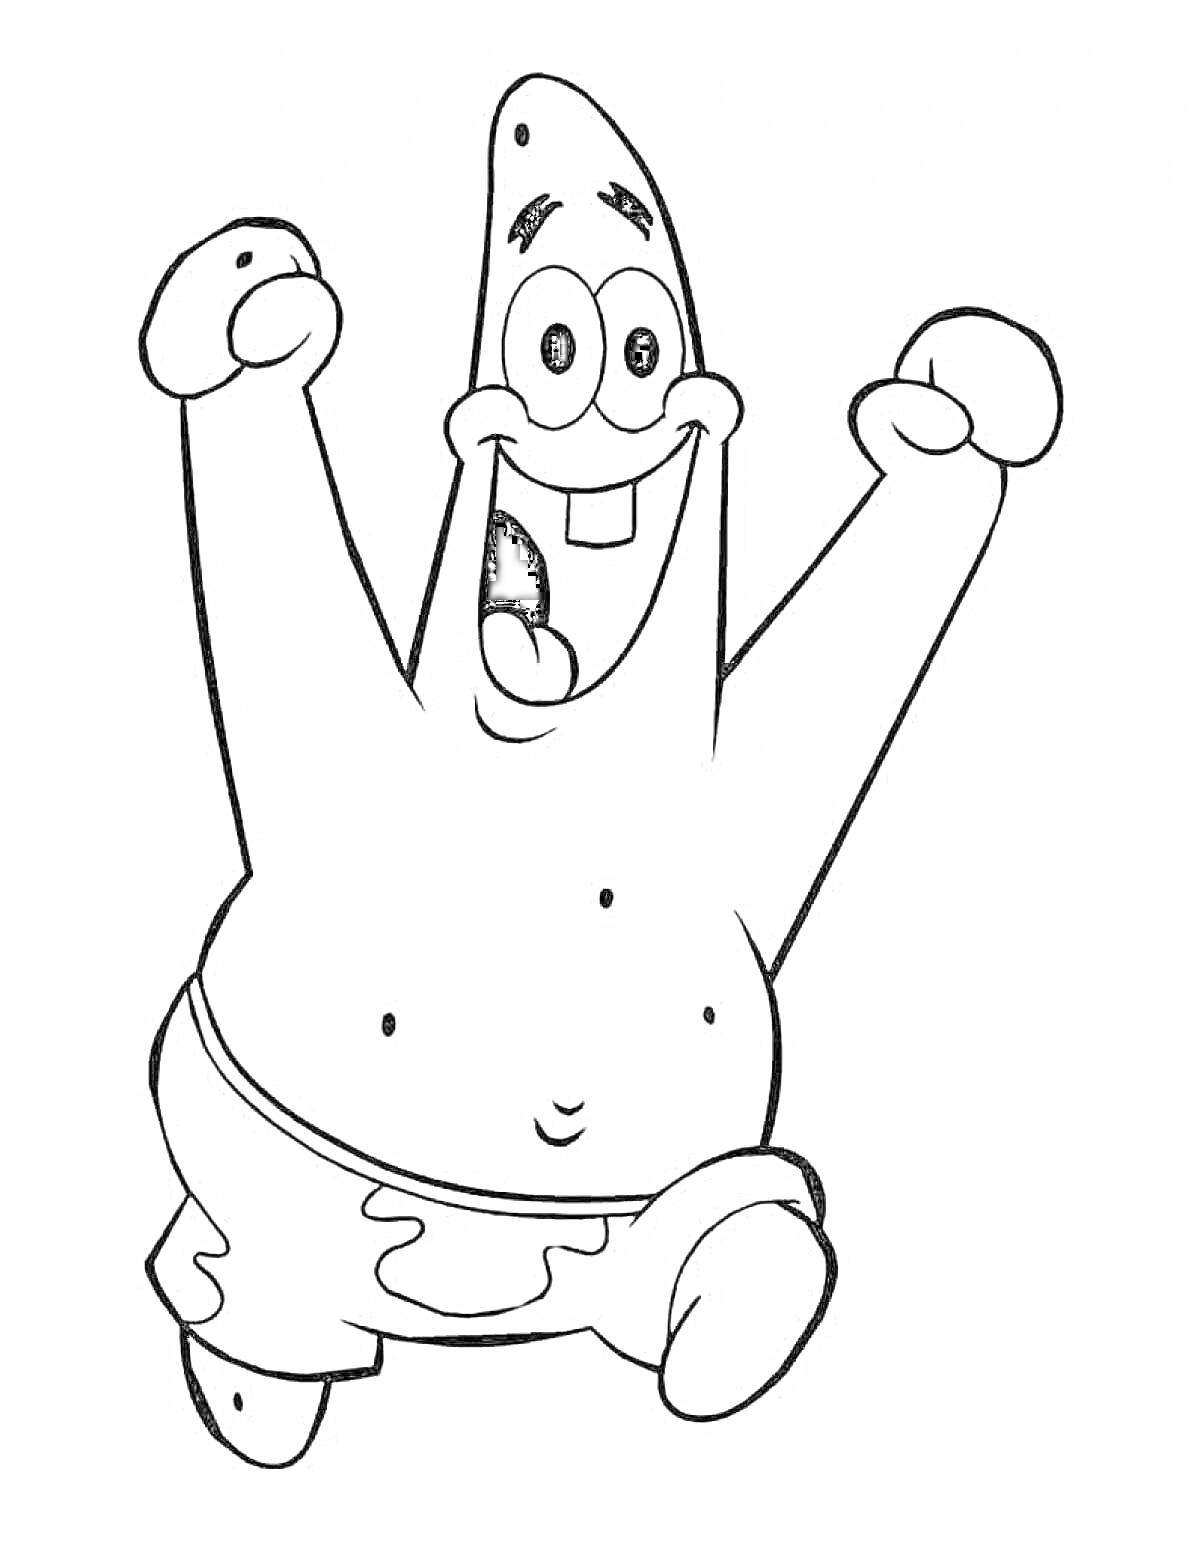 Раскраска Патрик в прыжке с поднятыми руками